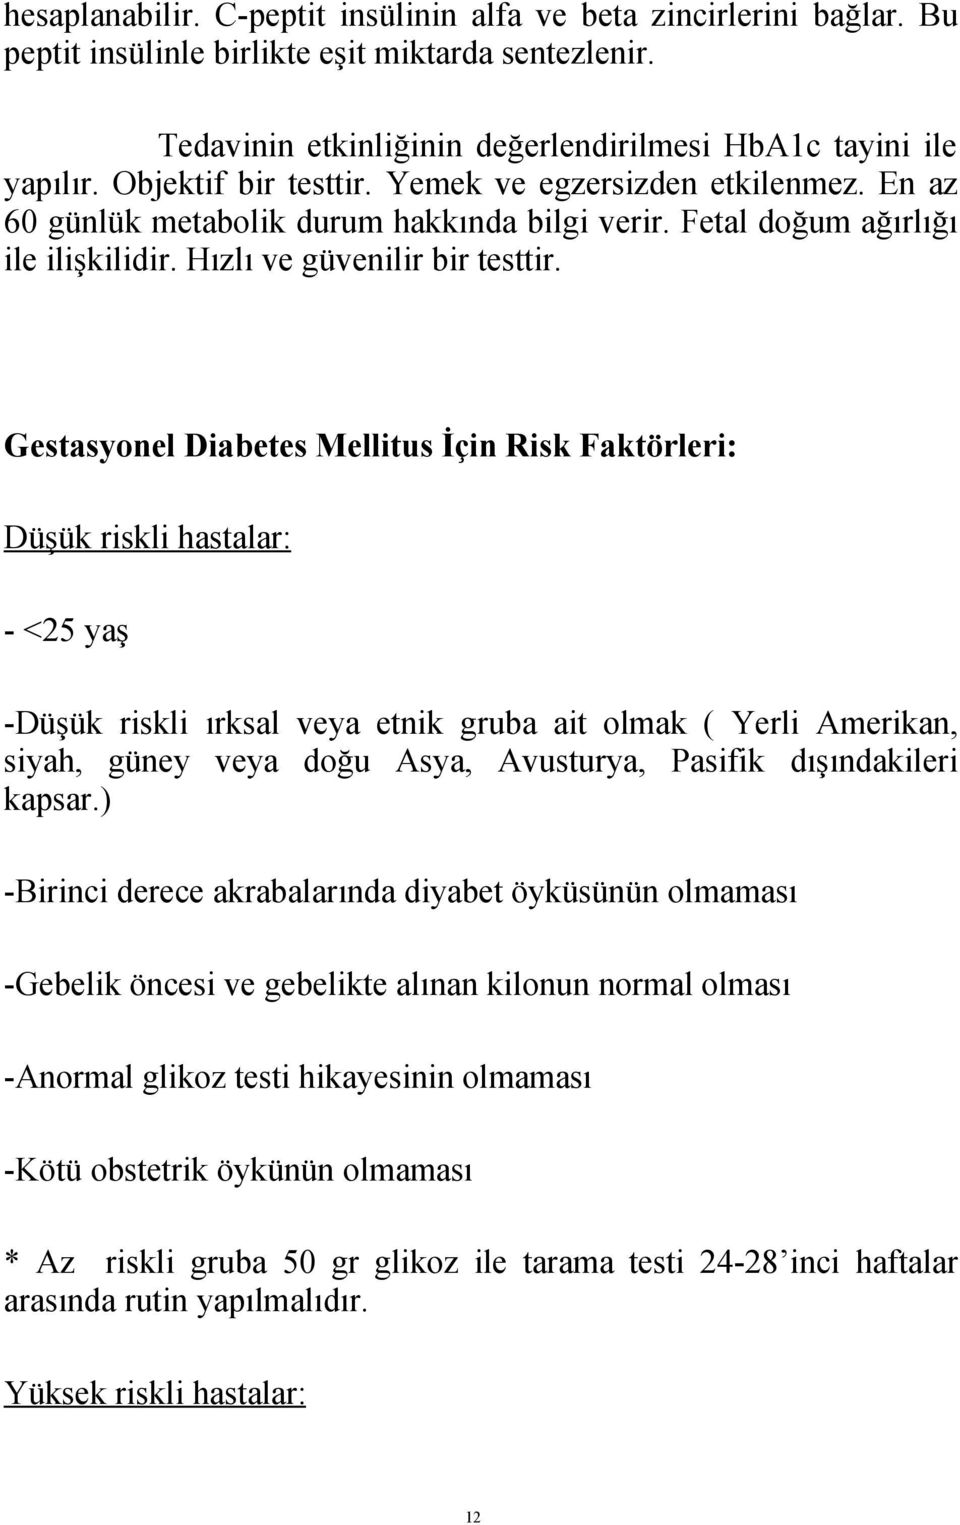 Gestasyonel Diabetes Mellitus İçin Risk Faktörleri: Düşük riskli hastalar: - <25 yaş -Düşük riskli ırksal veya etnik gruba ait olmak ( Yerli Amerikan, siyah, güney veya doğu Asya, Avusturya, Pasifik